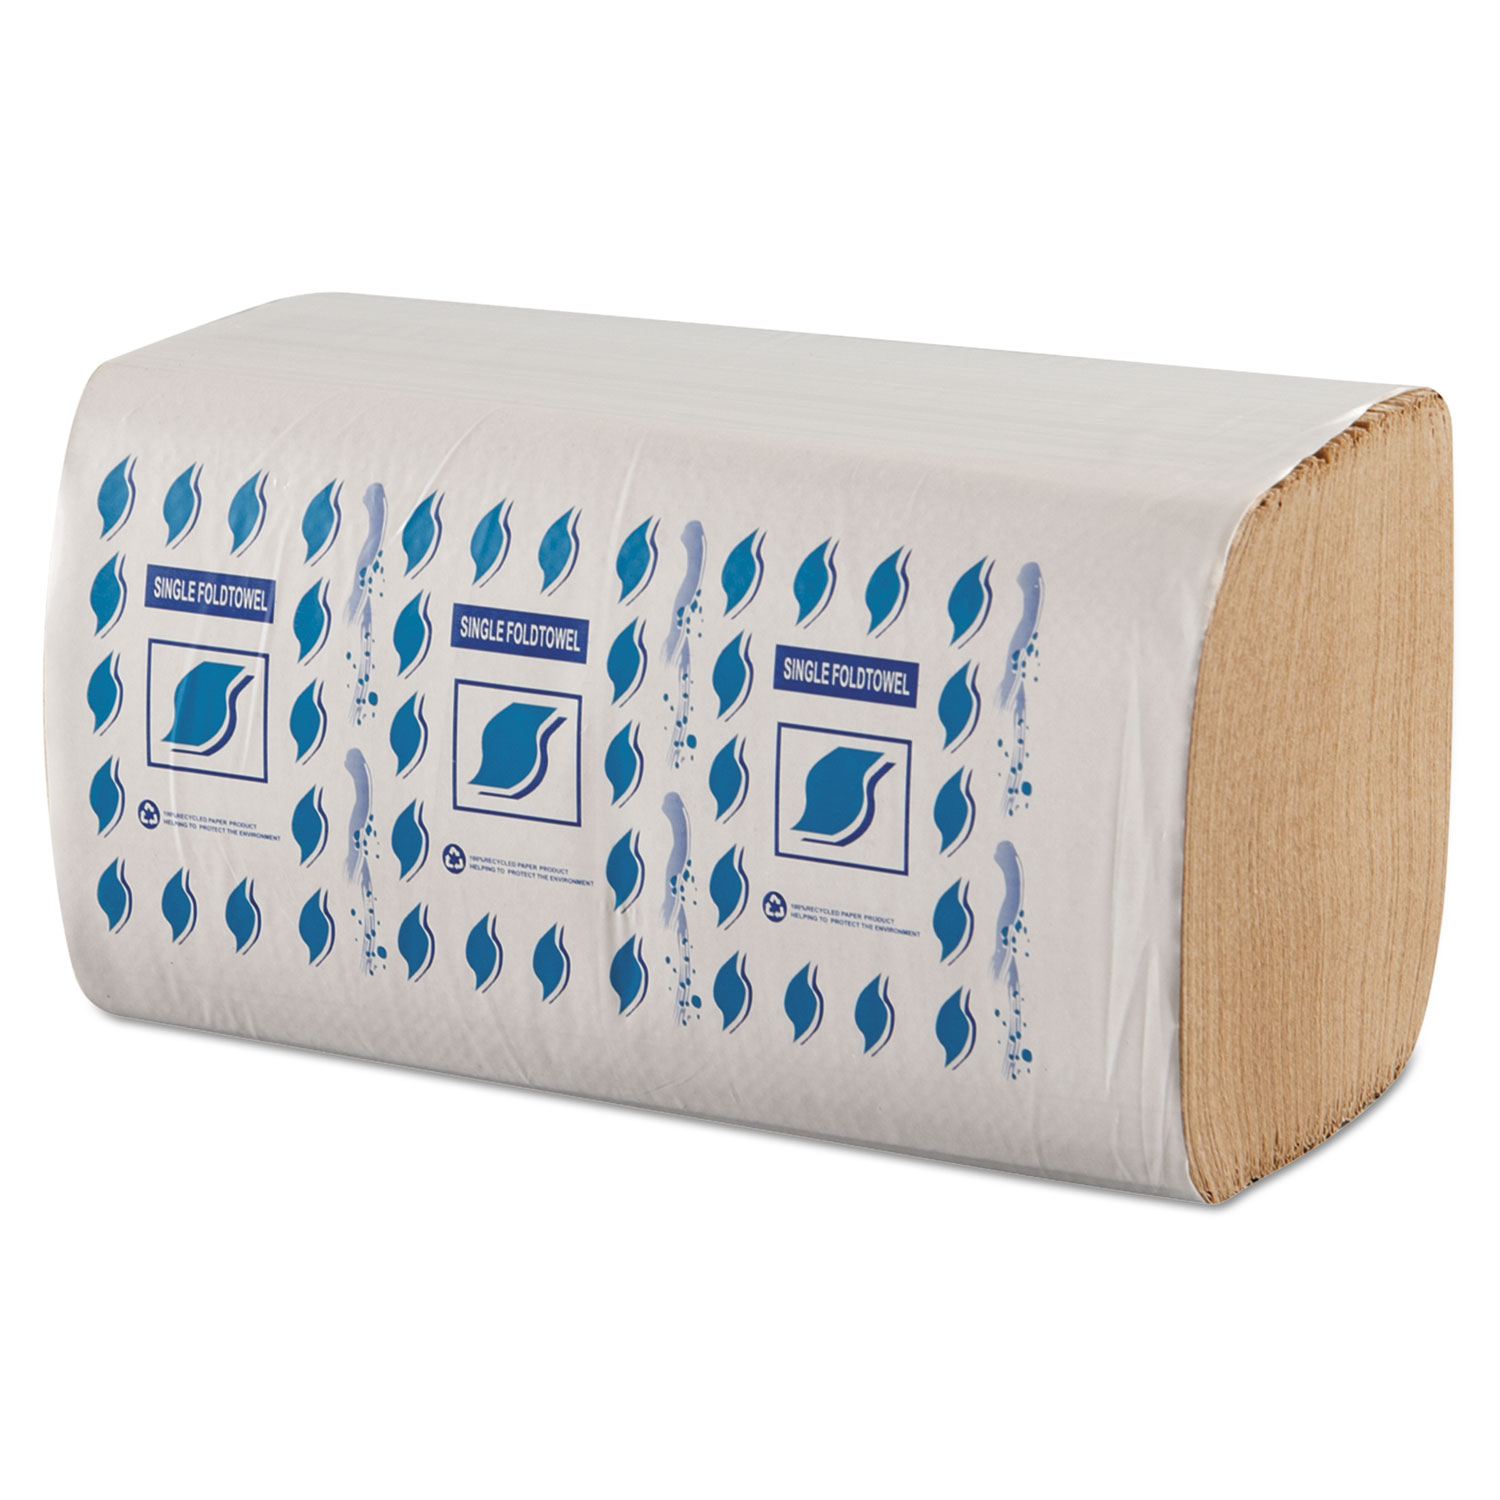  GEN GENSF5001K Single-Fold Paper Towels, 1-Ply, Kraft, 9 x 9 1/4 (GENSF5001K) 